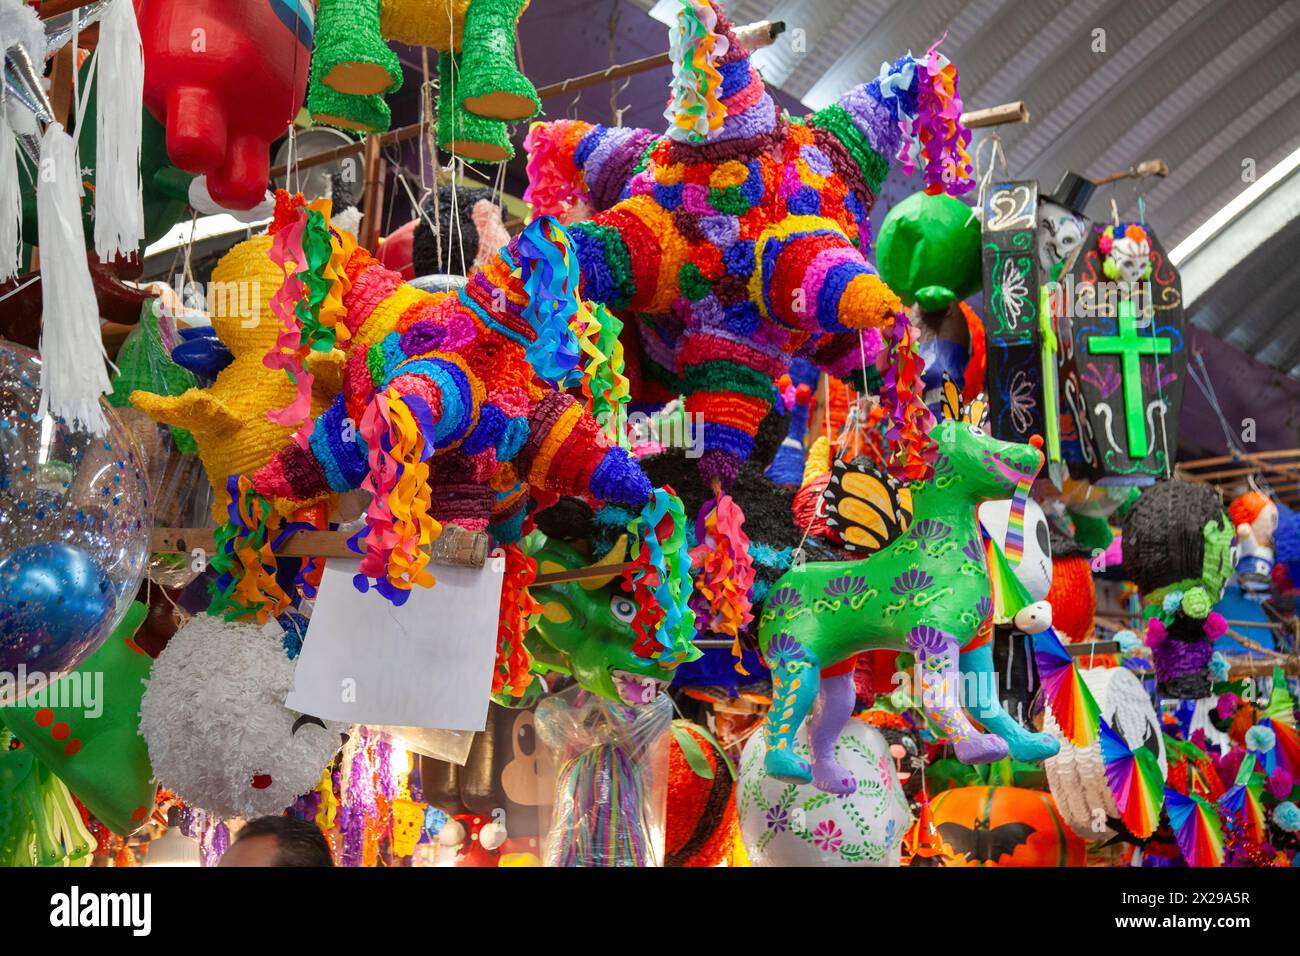 Pinata-Puppen und festliche Merchandise zum Verkauf auf dem Jamaica-Markt in mexiko-Stadt, Mexiko Stockfoto